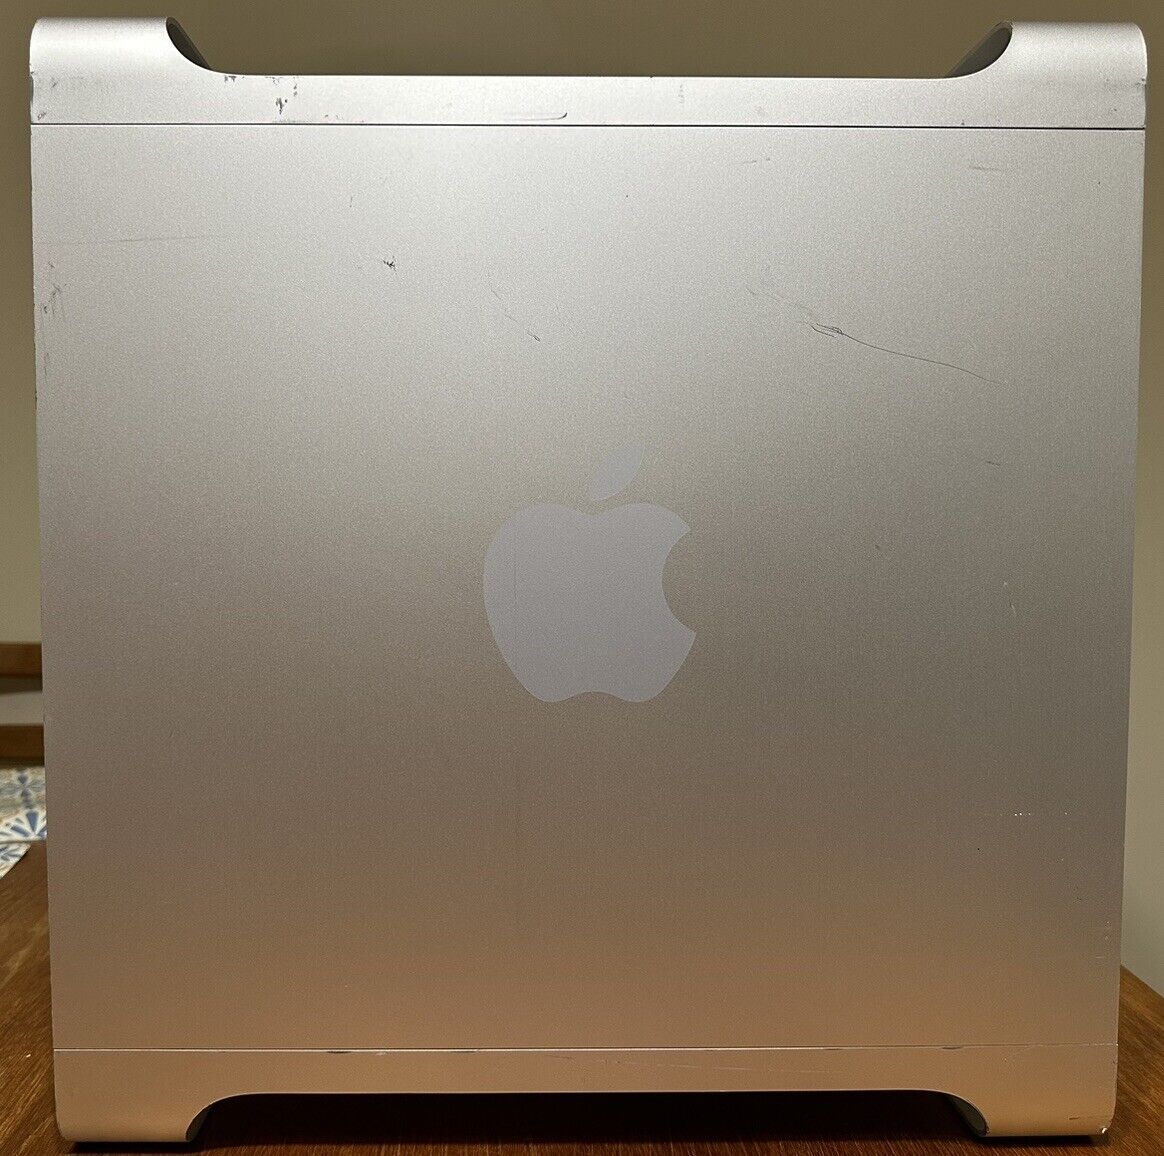 Apple Power Mac G5 Dual 2GHz. 2GB RAM, 150GB HHD, OSX 10.4